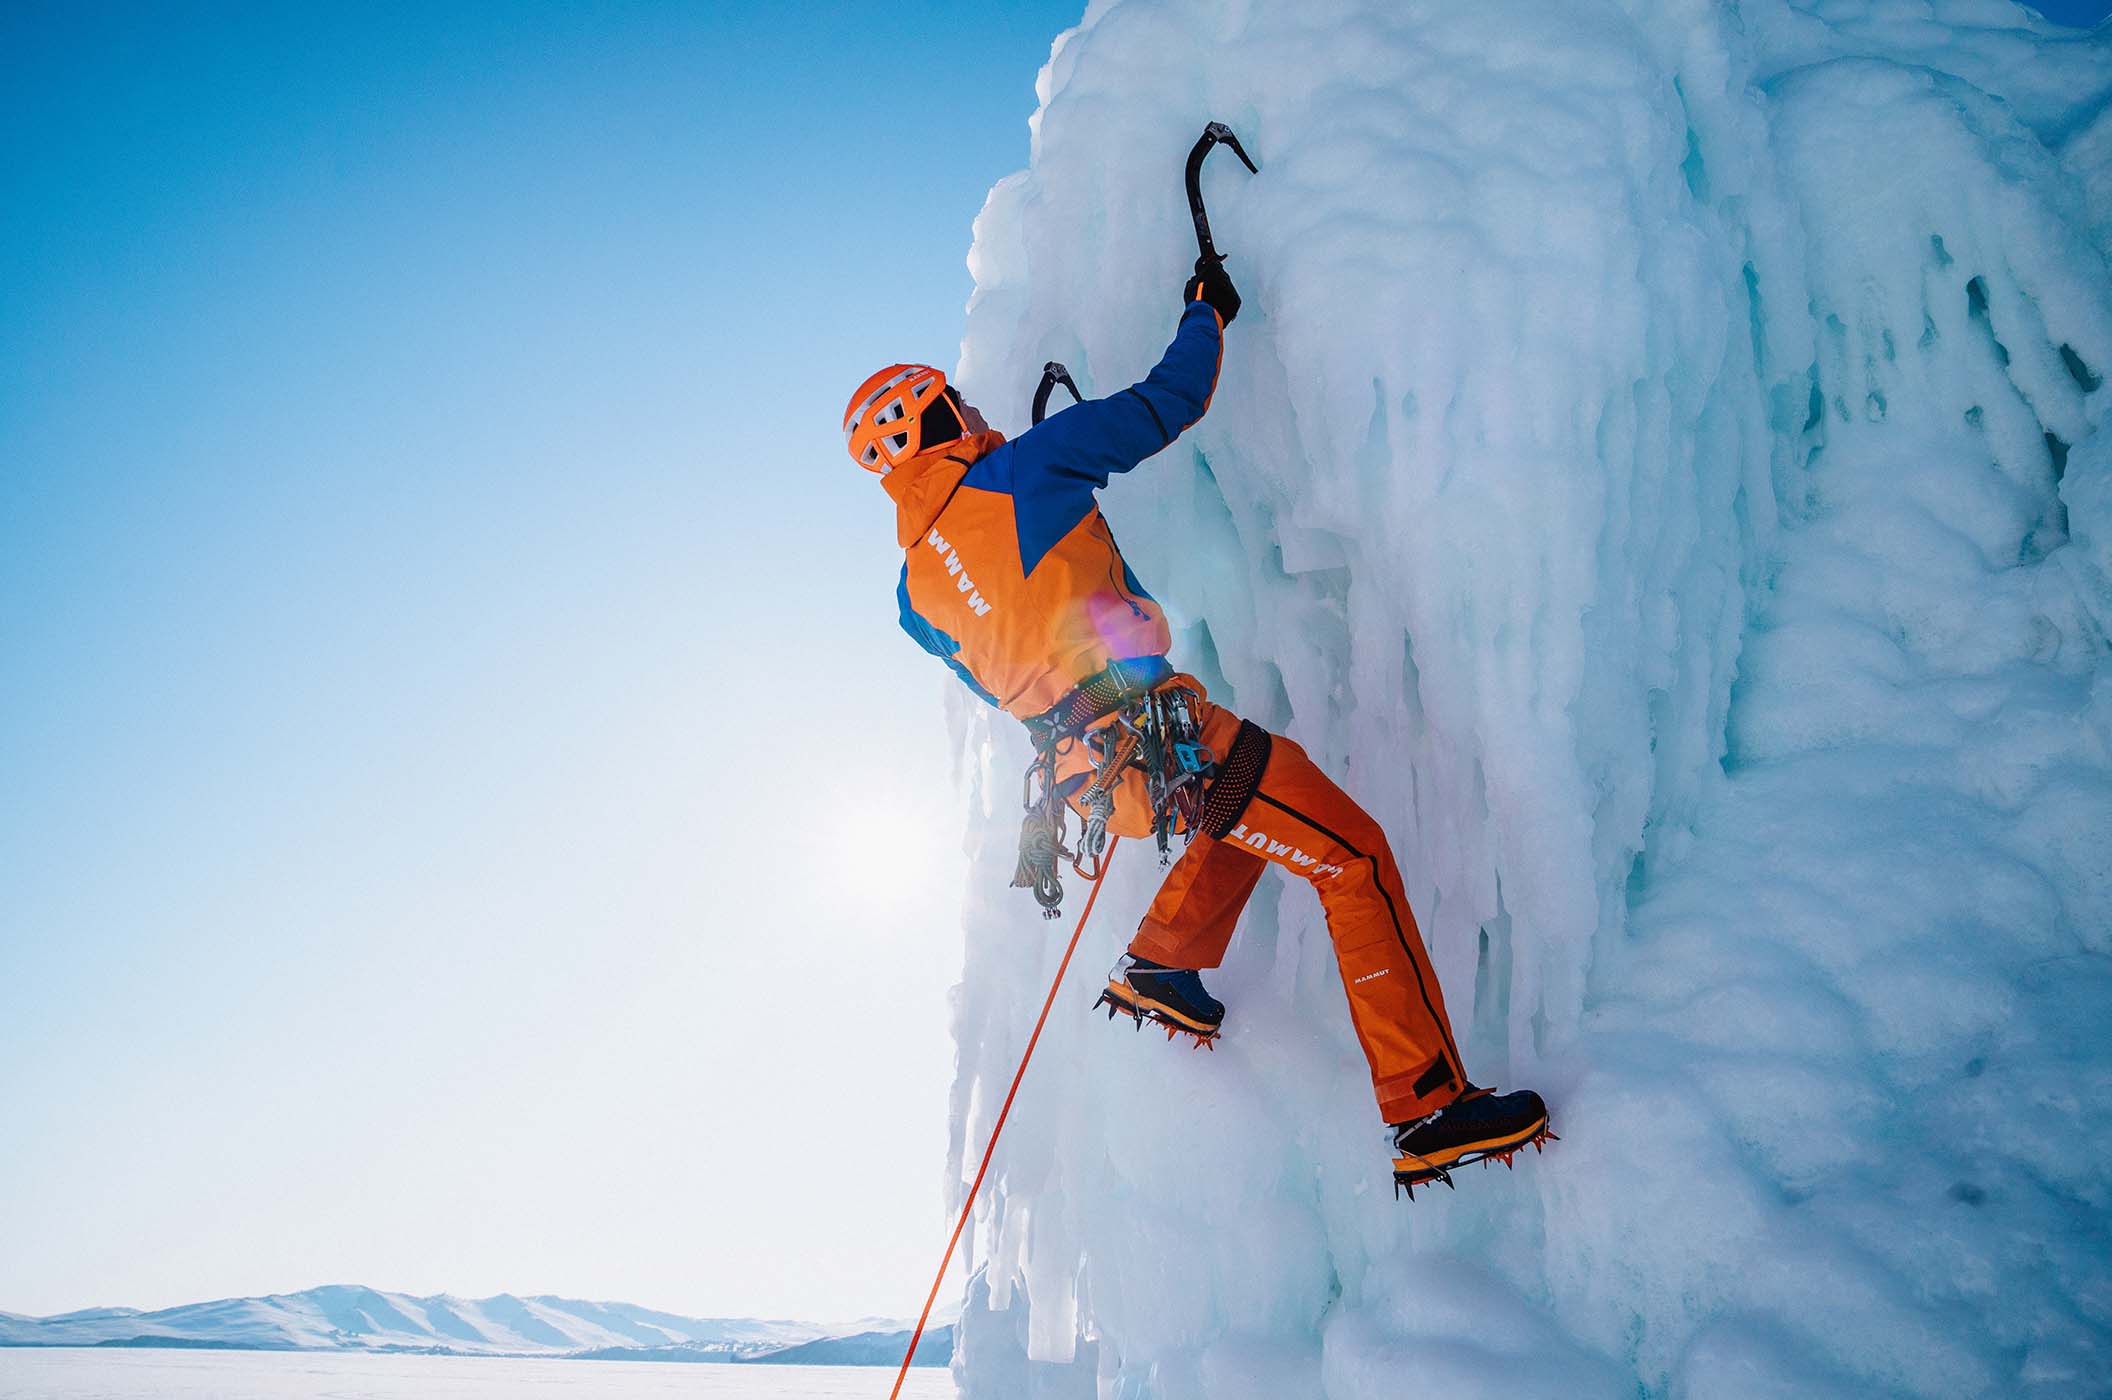 Mammut Eiger Extreme - bergsportkleding en -uitrusting voor professionele outdoor-sporters